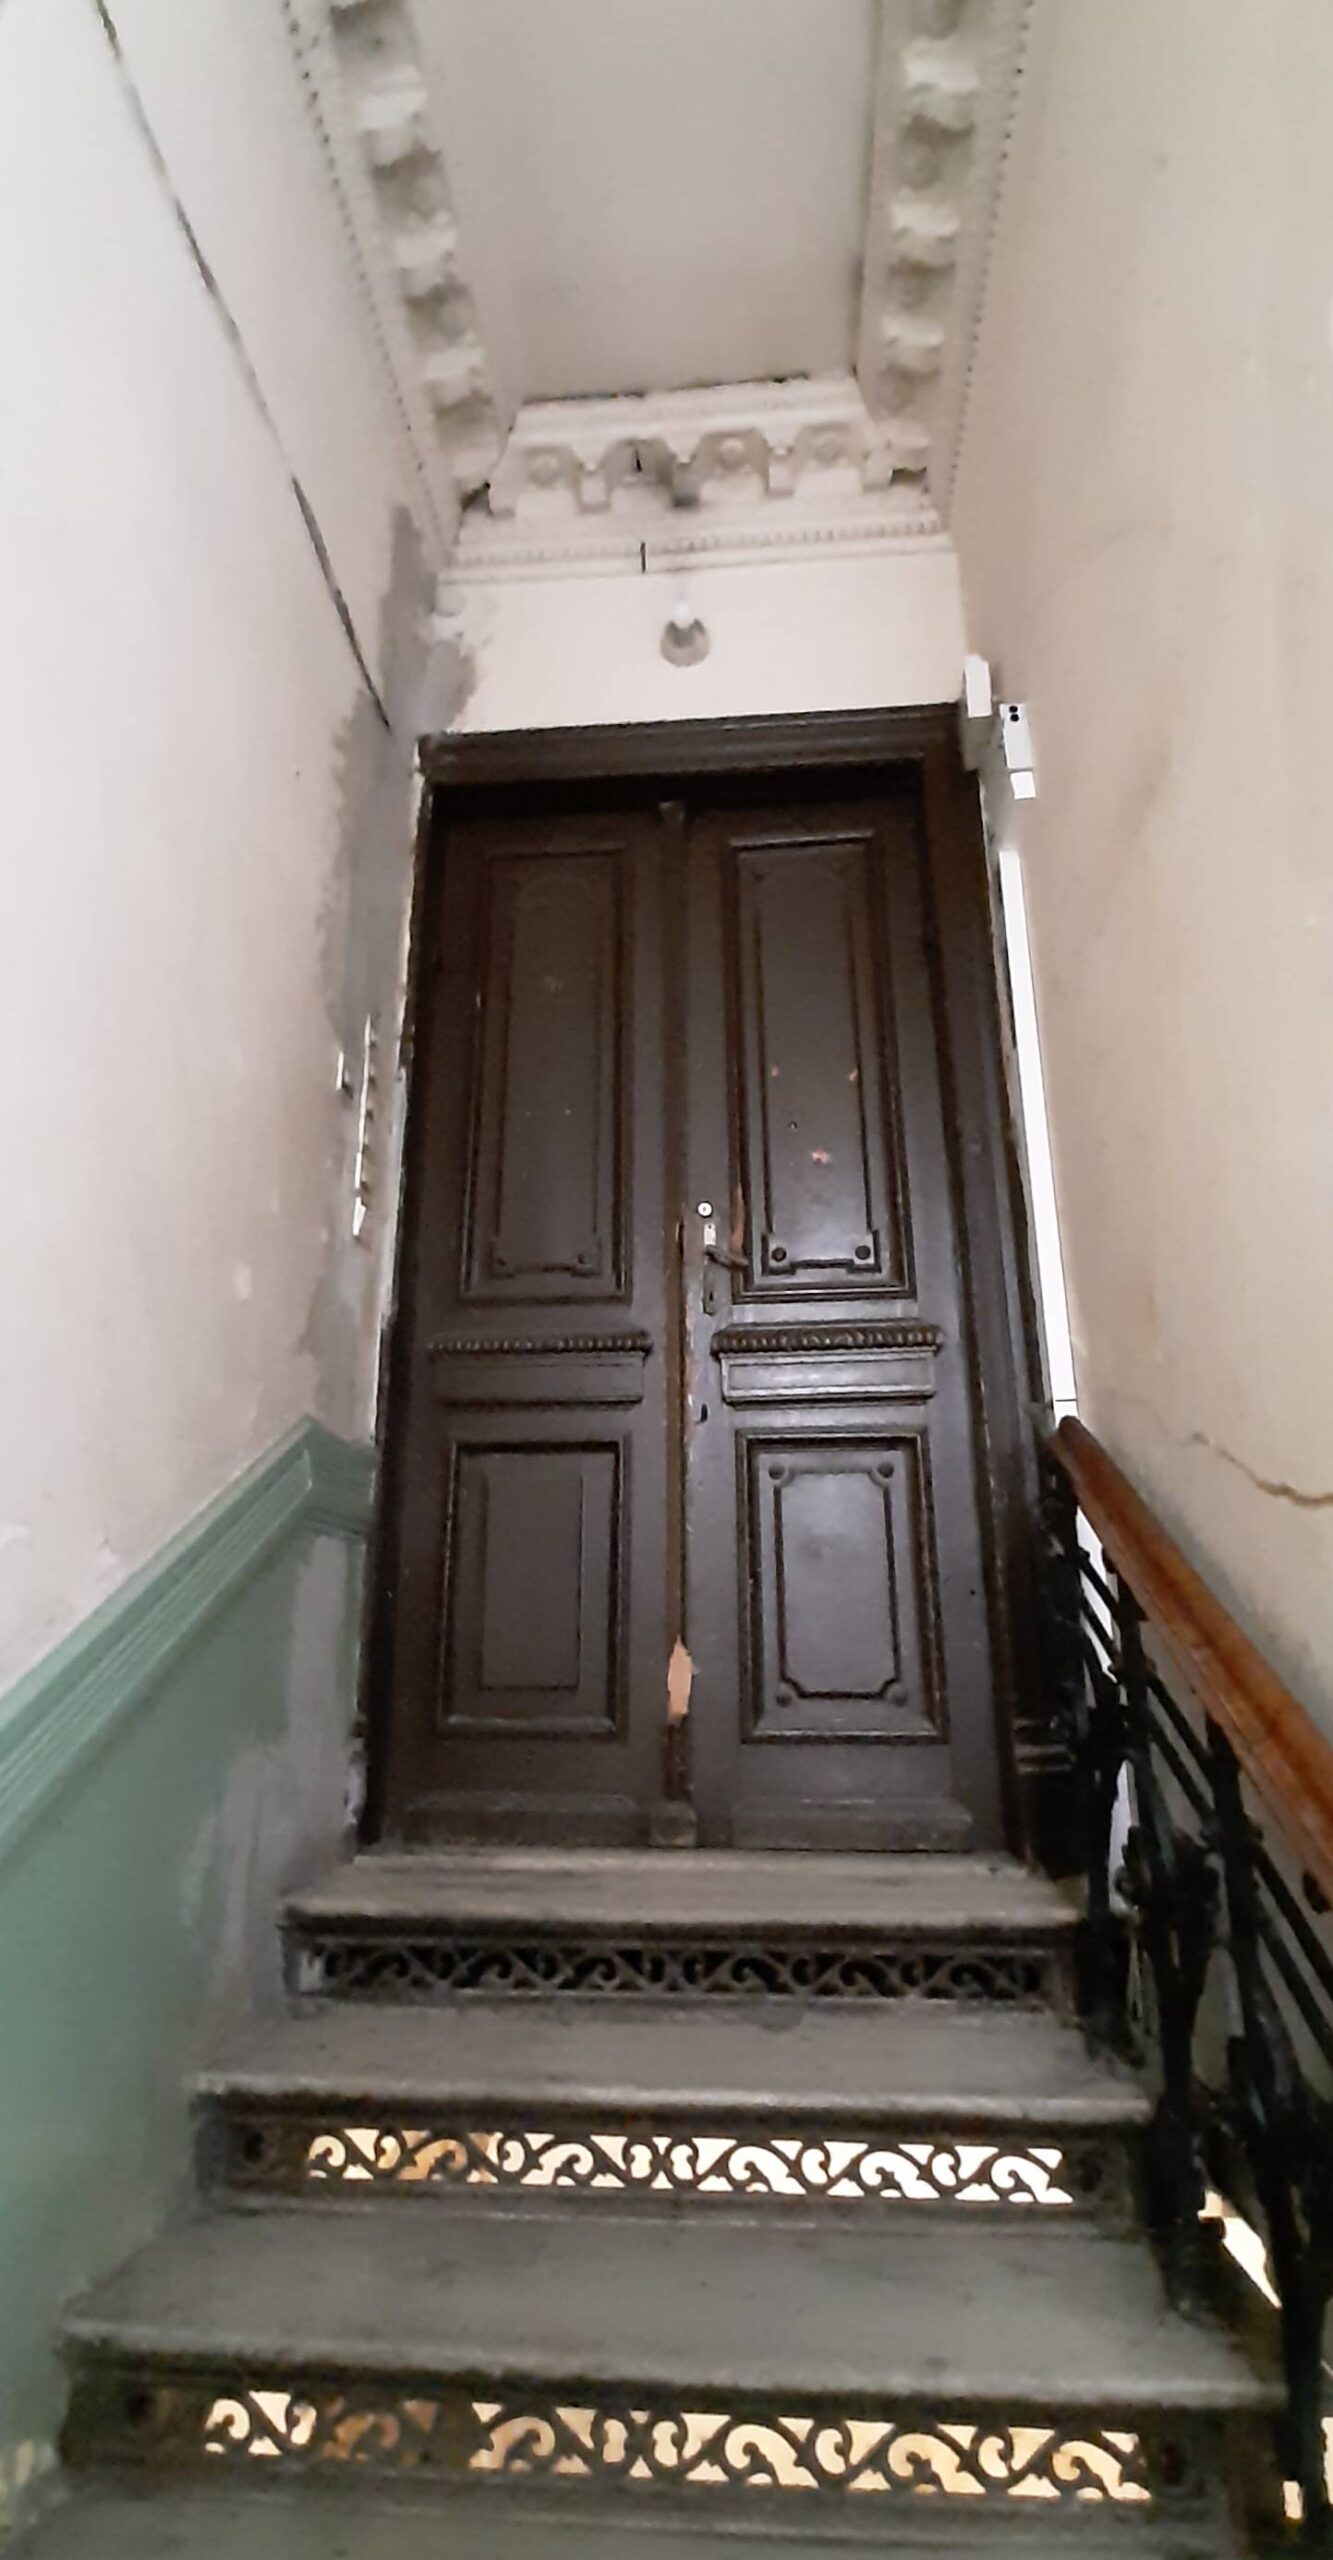 Klatka główna. Drzwi do podzielonego na 7 części mieszkania ostatniego piętra. Fot. Agnieszka Dziubiel. 2022 r., źródło: AOD III.